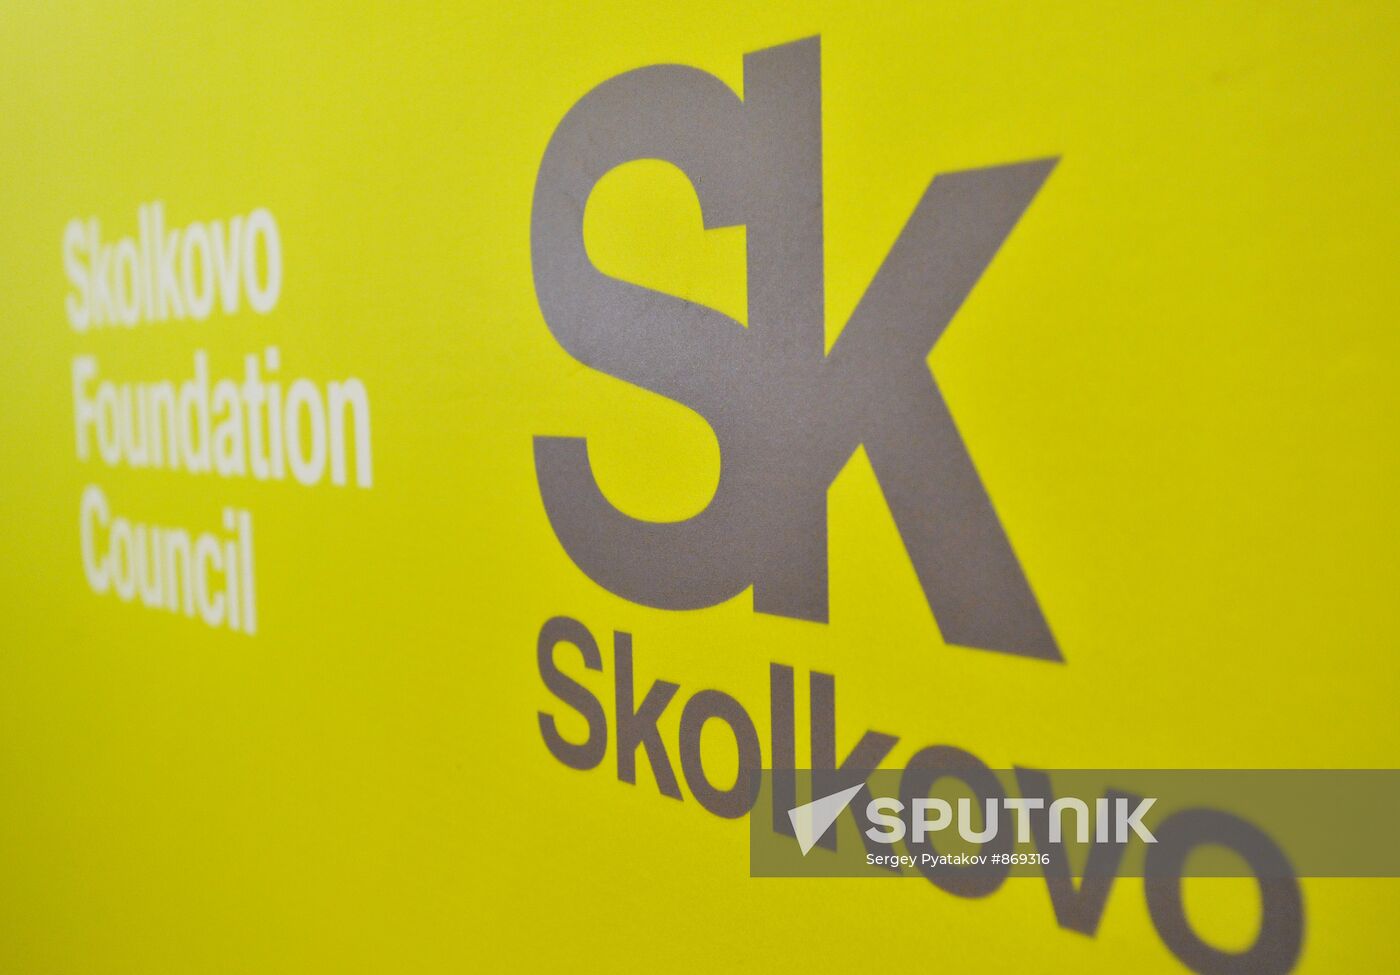 Skolkovo i-Gorod logo